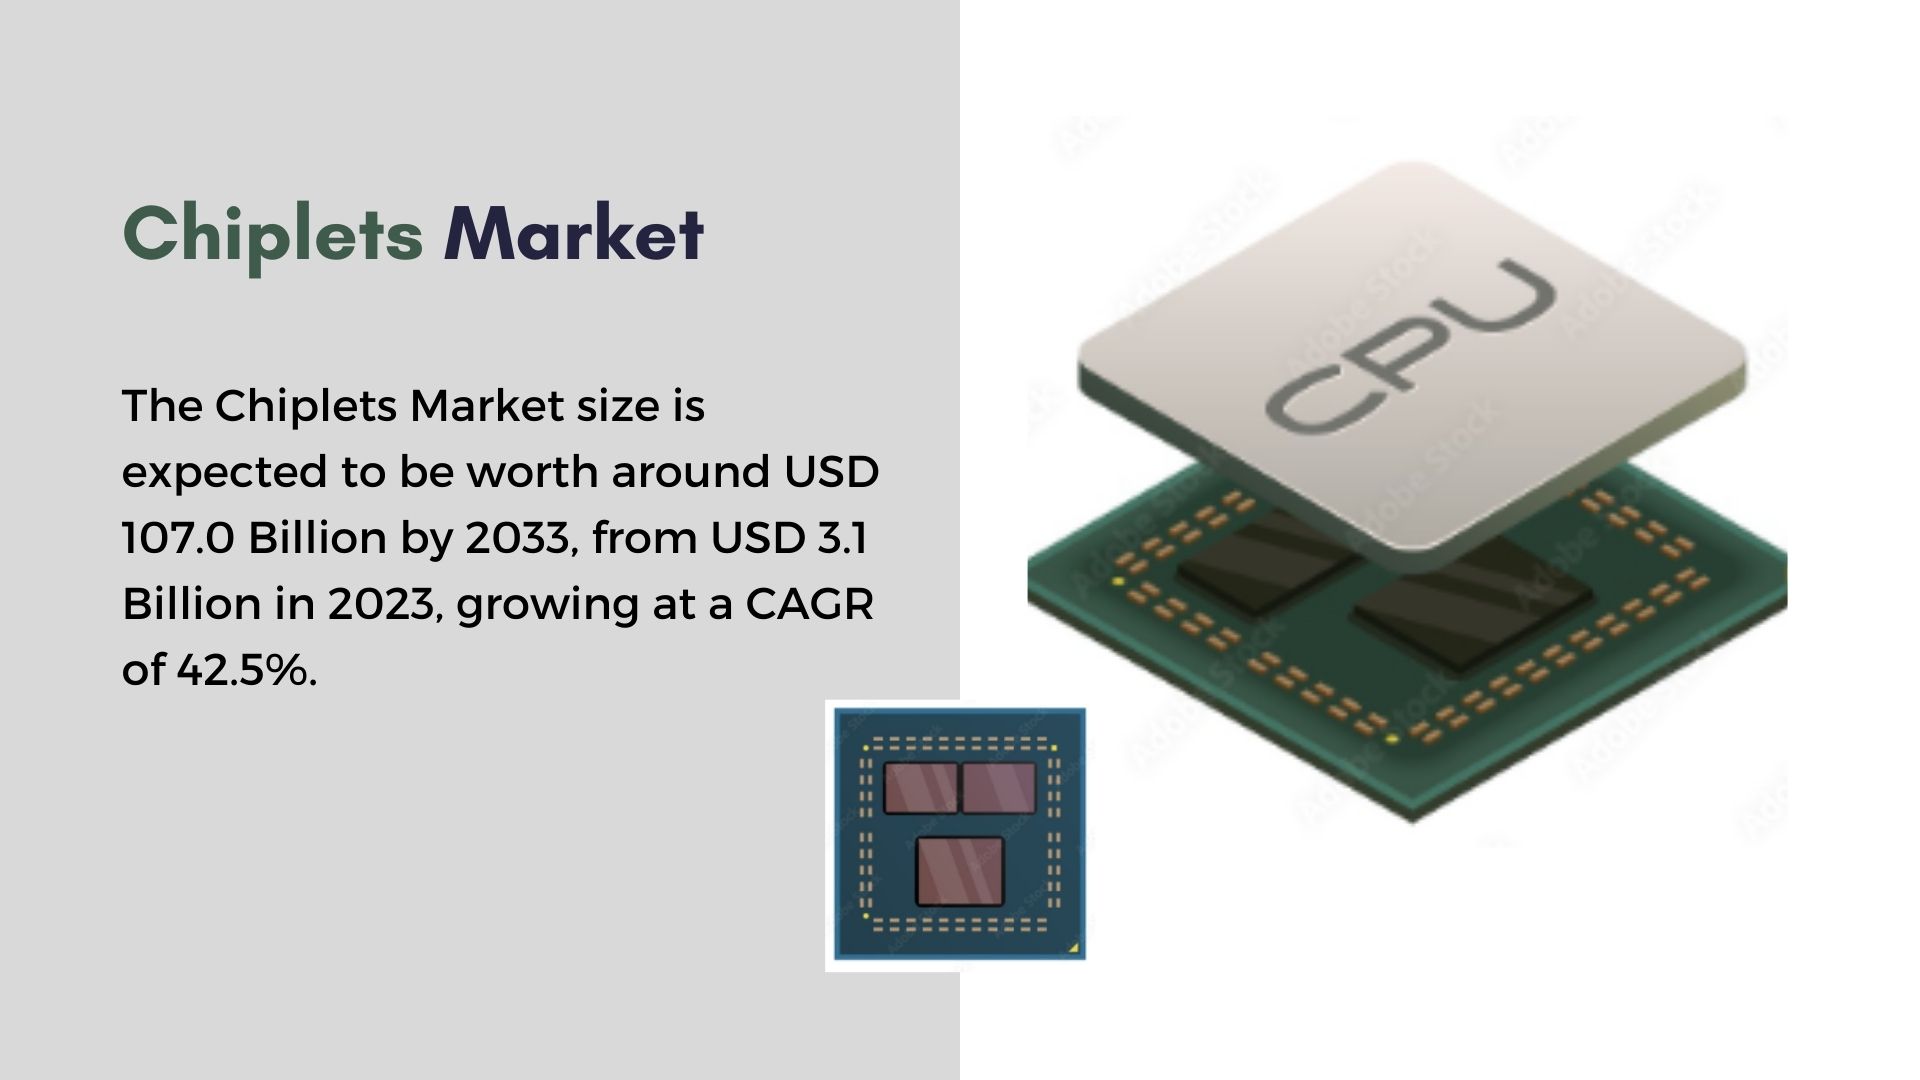 Chiplets Market Trends: A Journey Towards USD 107.0 billion by 2033